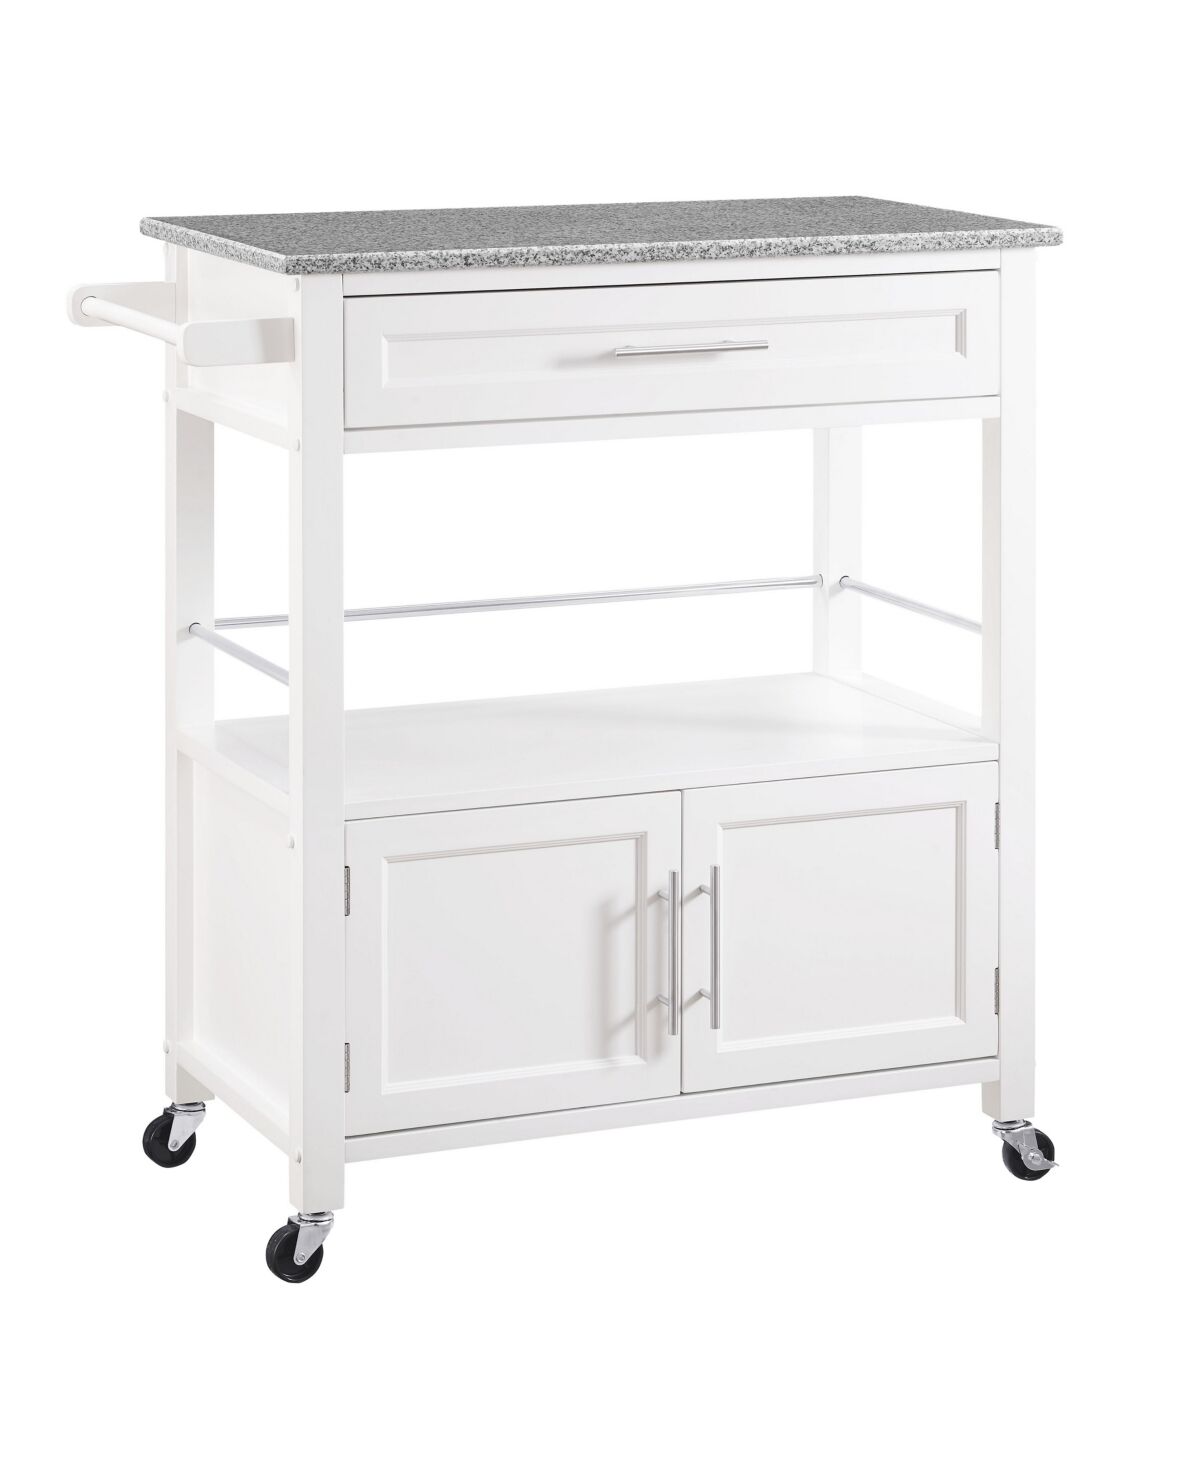 Linon Home Decor Cameron Kitchen Cart with Granite Top, White - White